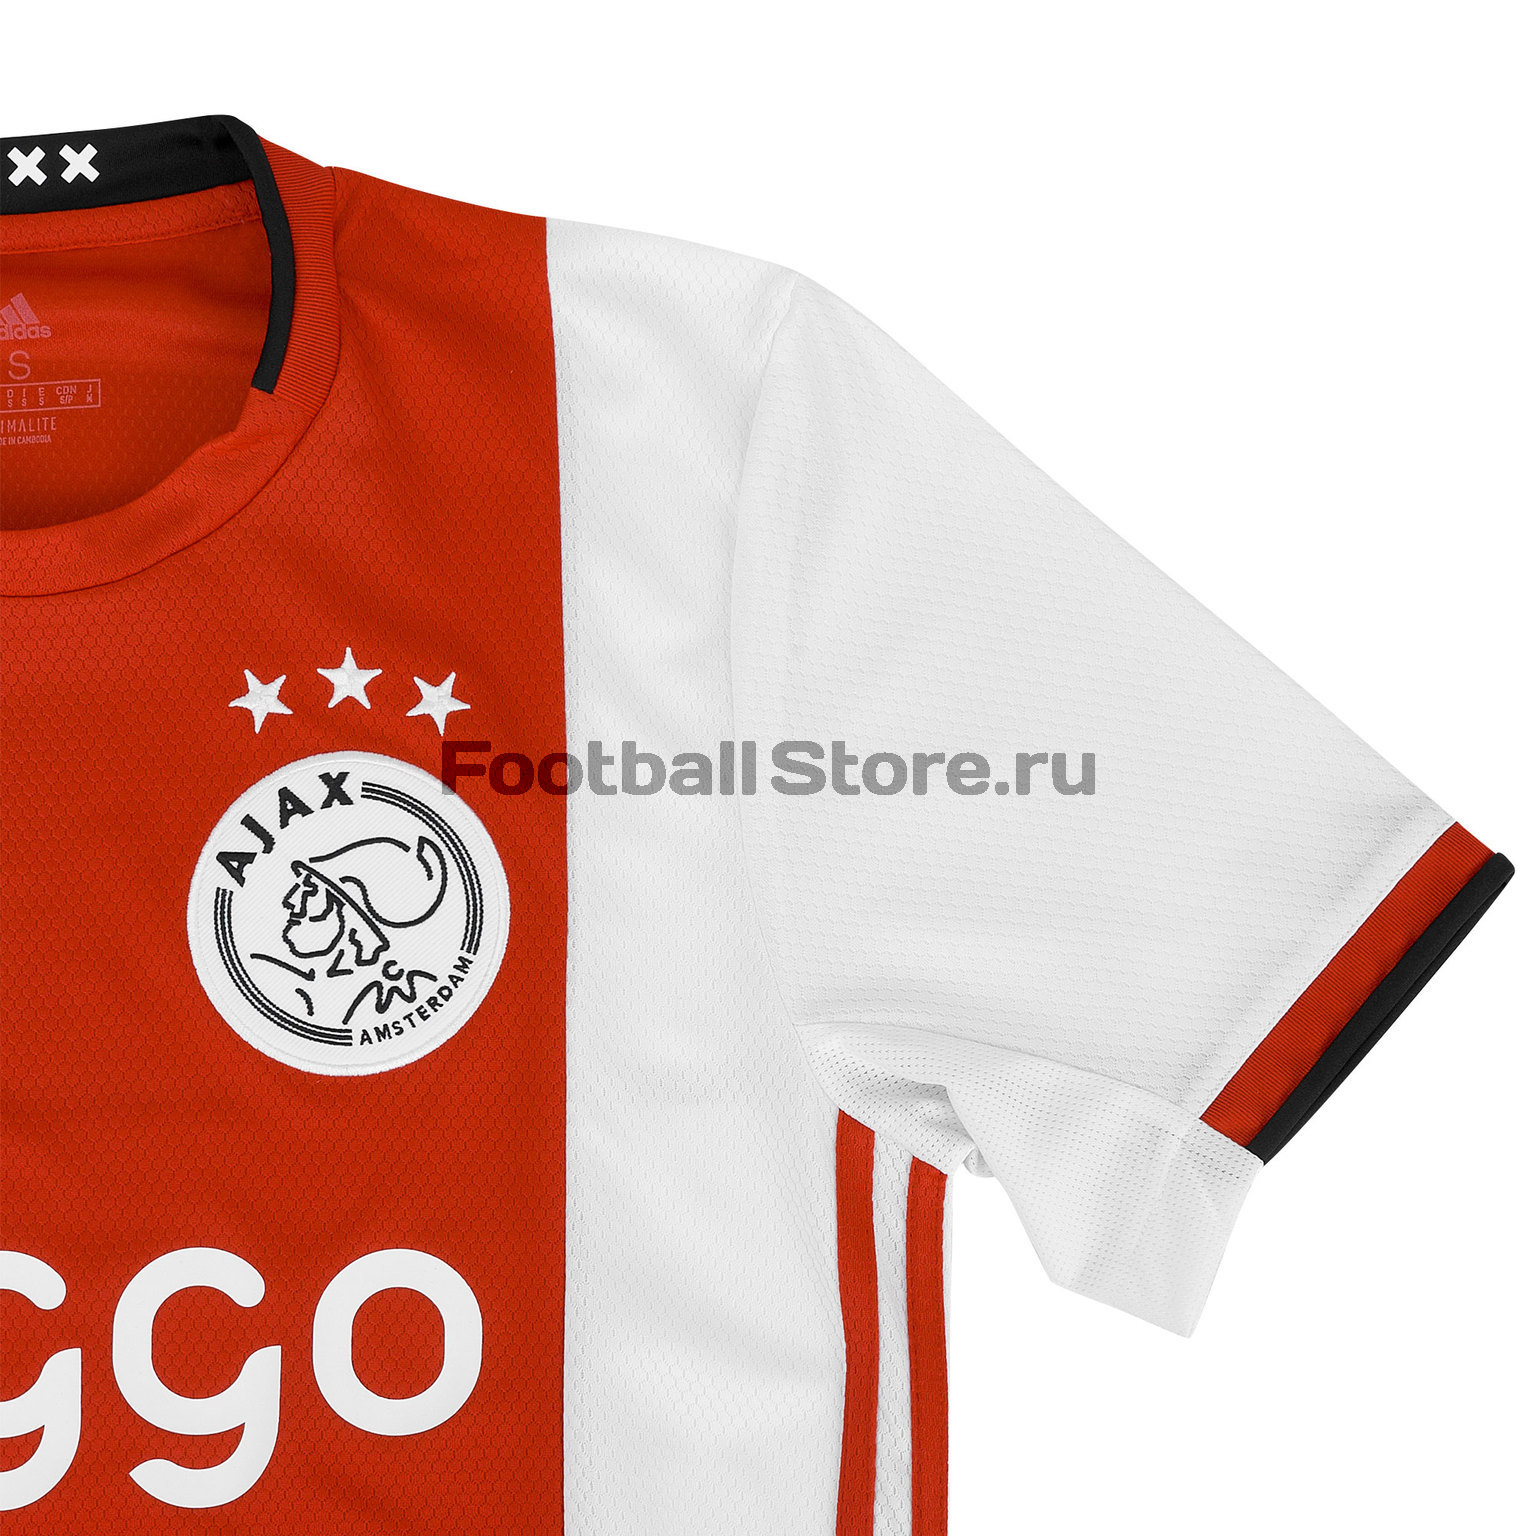 Футболка домашняя игровая Adidas Ajax 2019/20